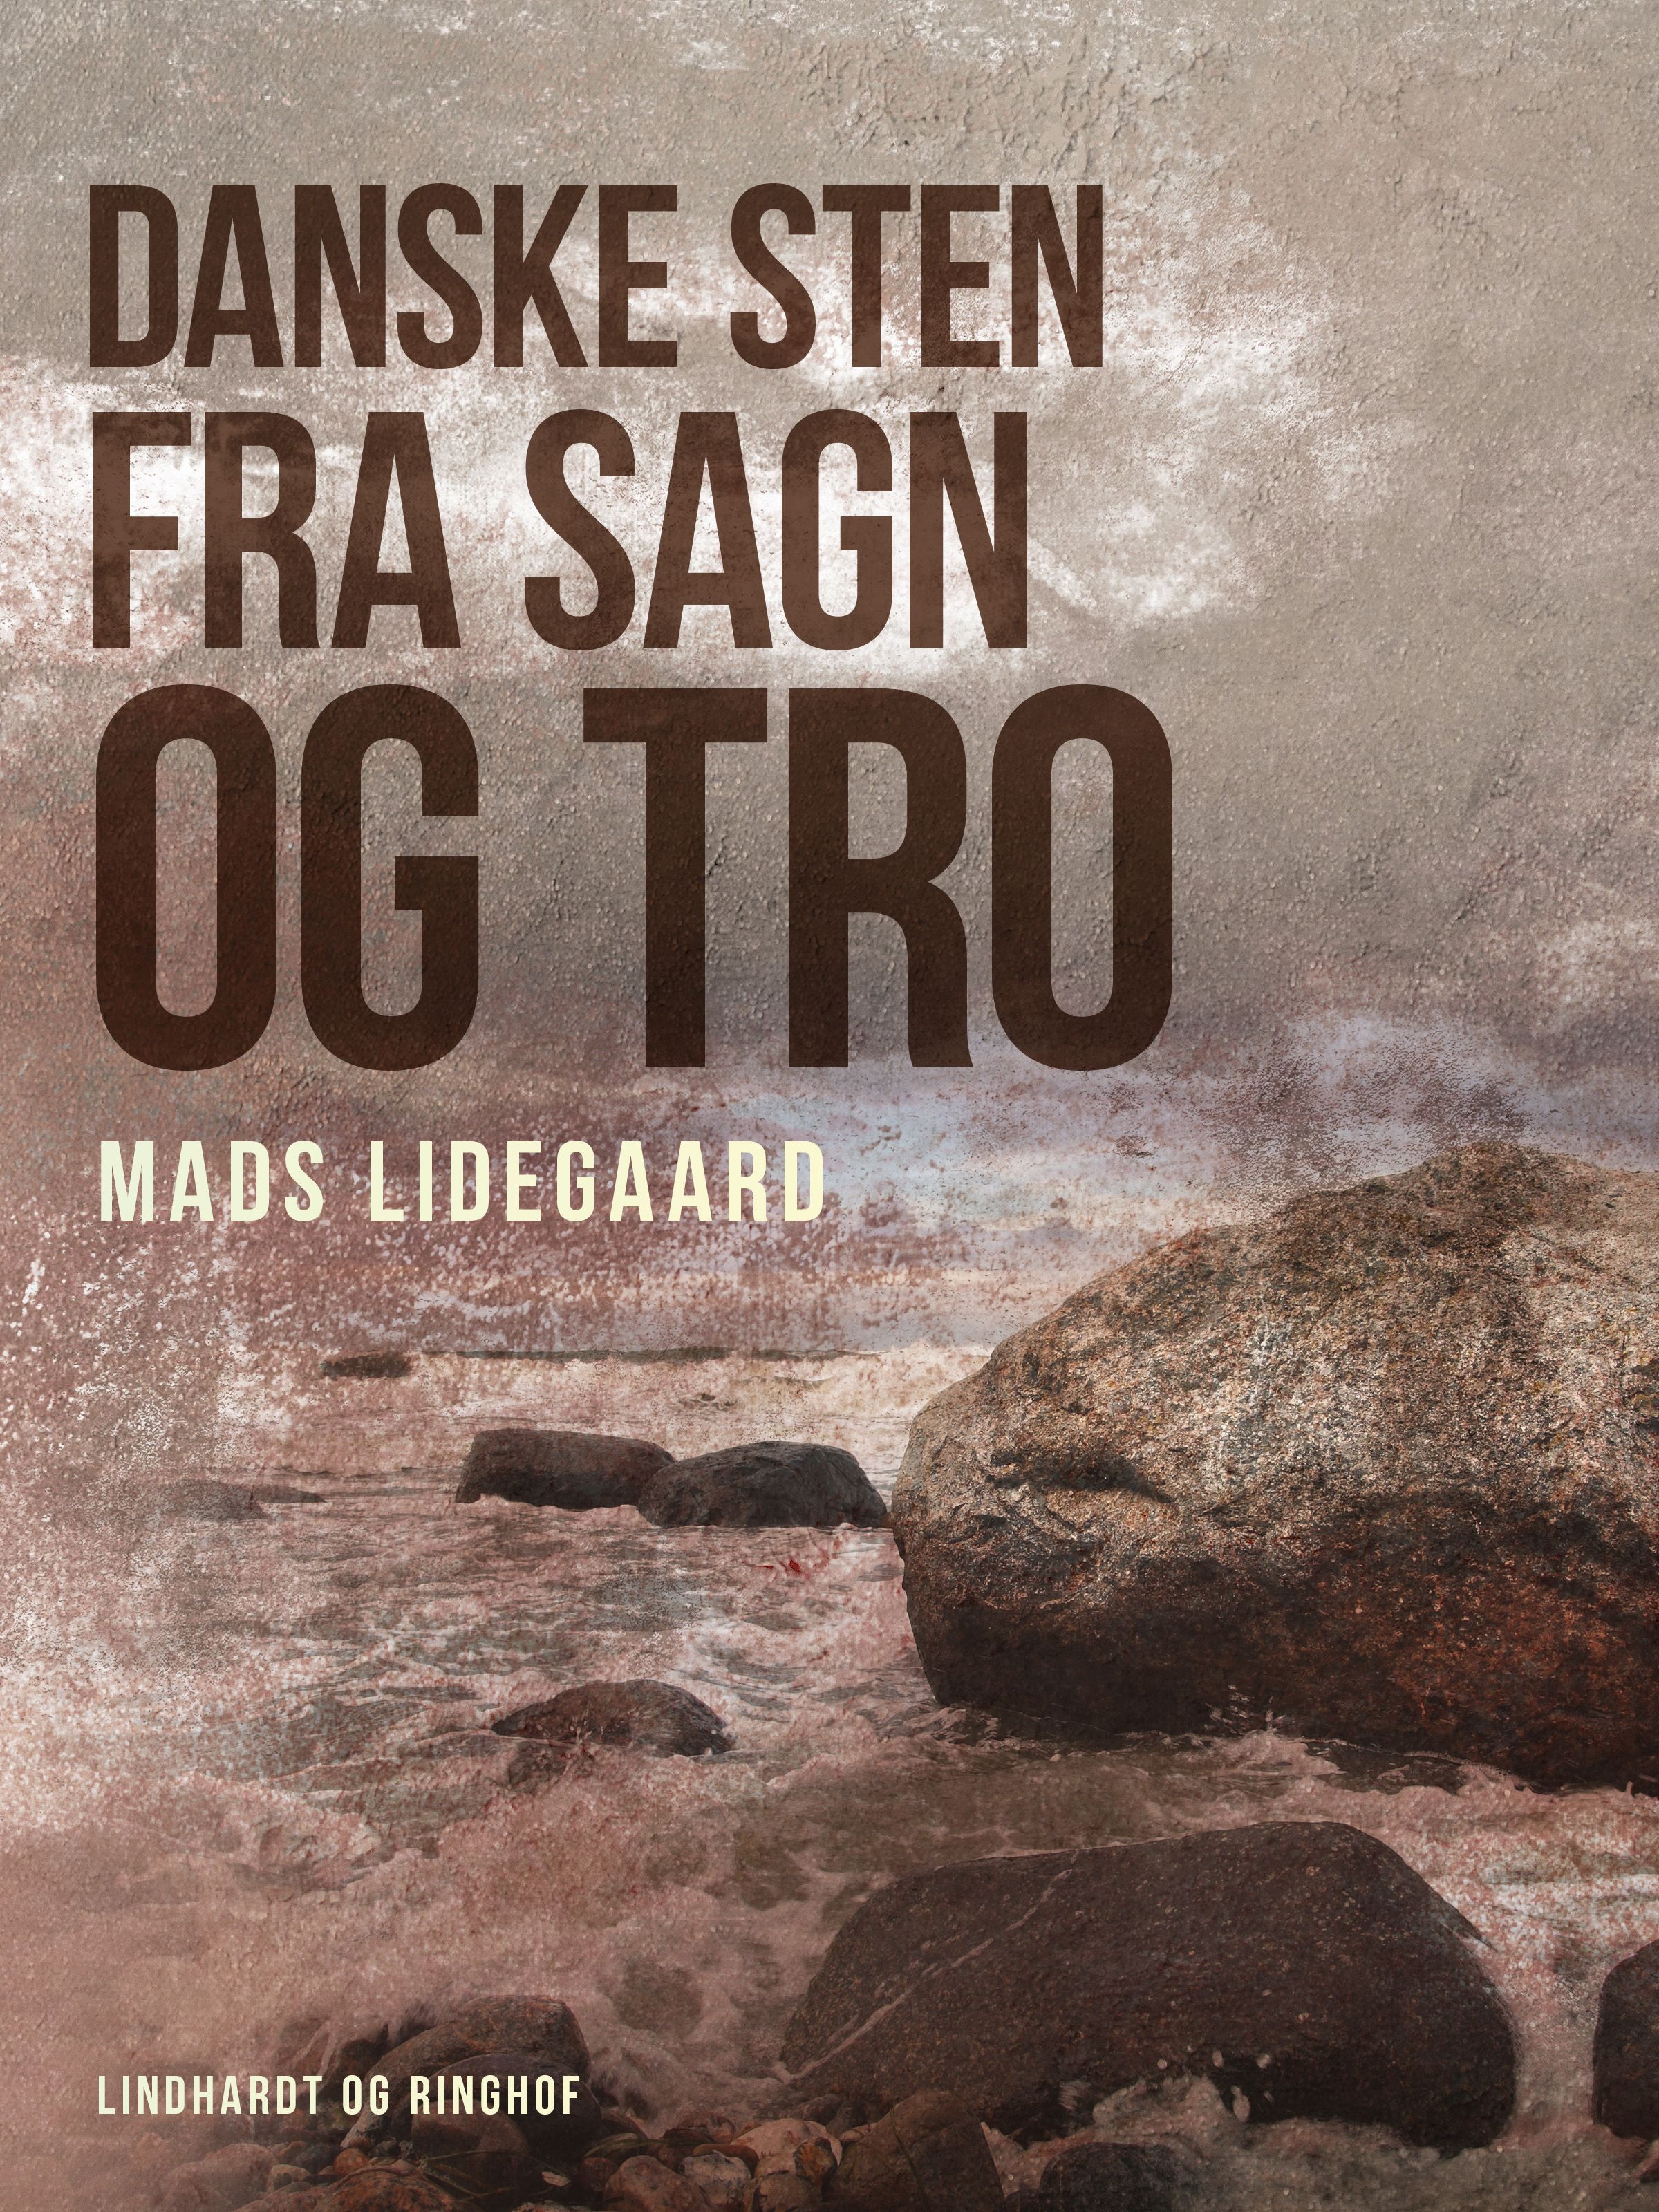 Danske sten fra sagn og tro, e-bog af Mads Lidegaard